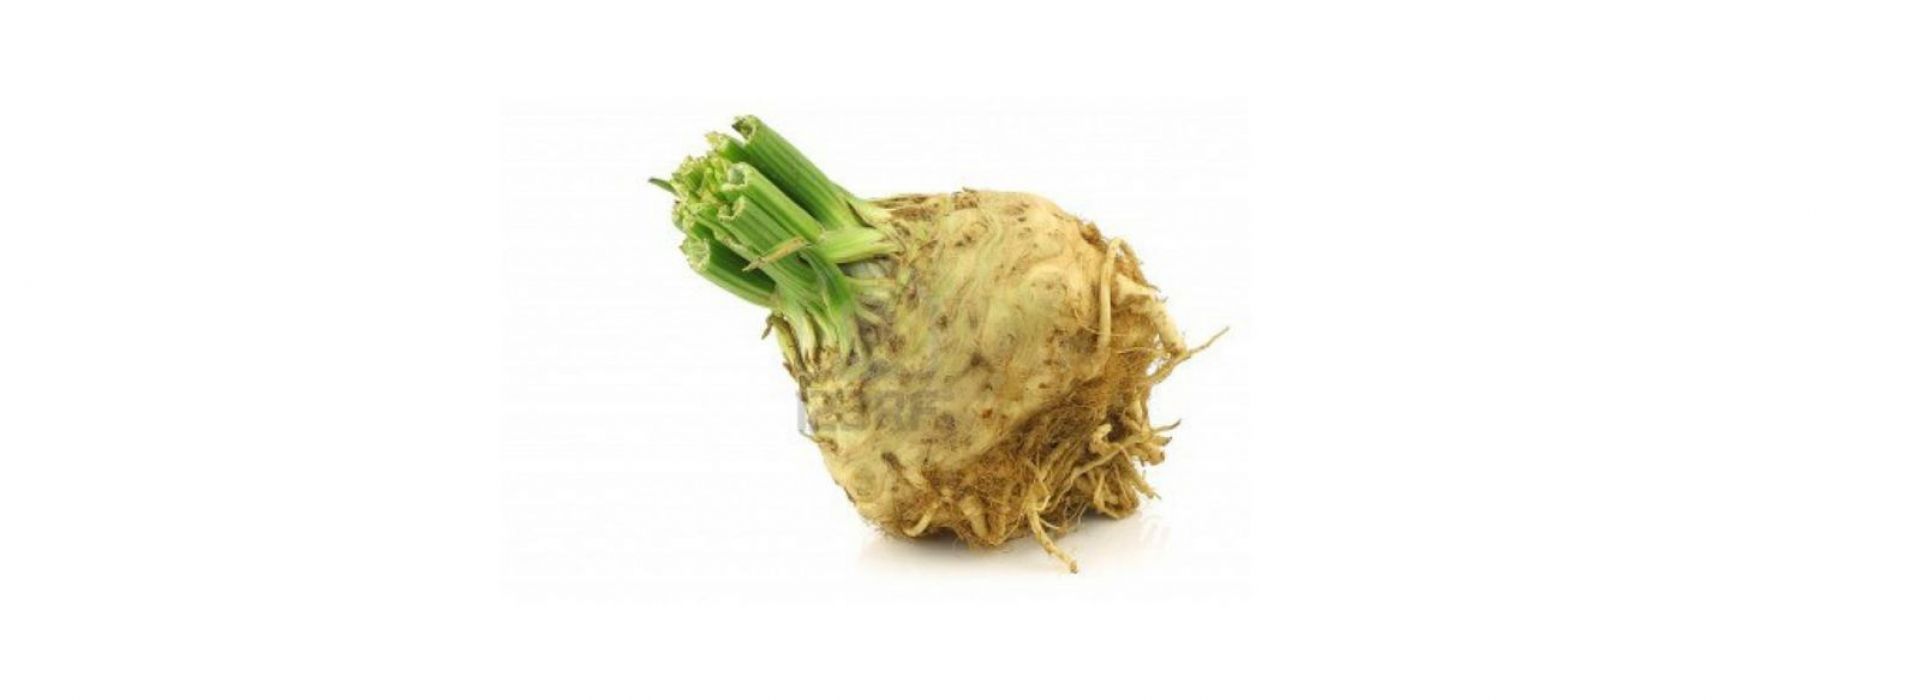 Celery Root